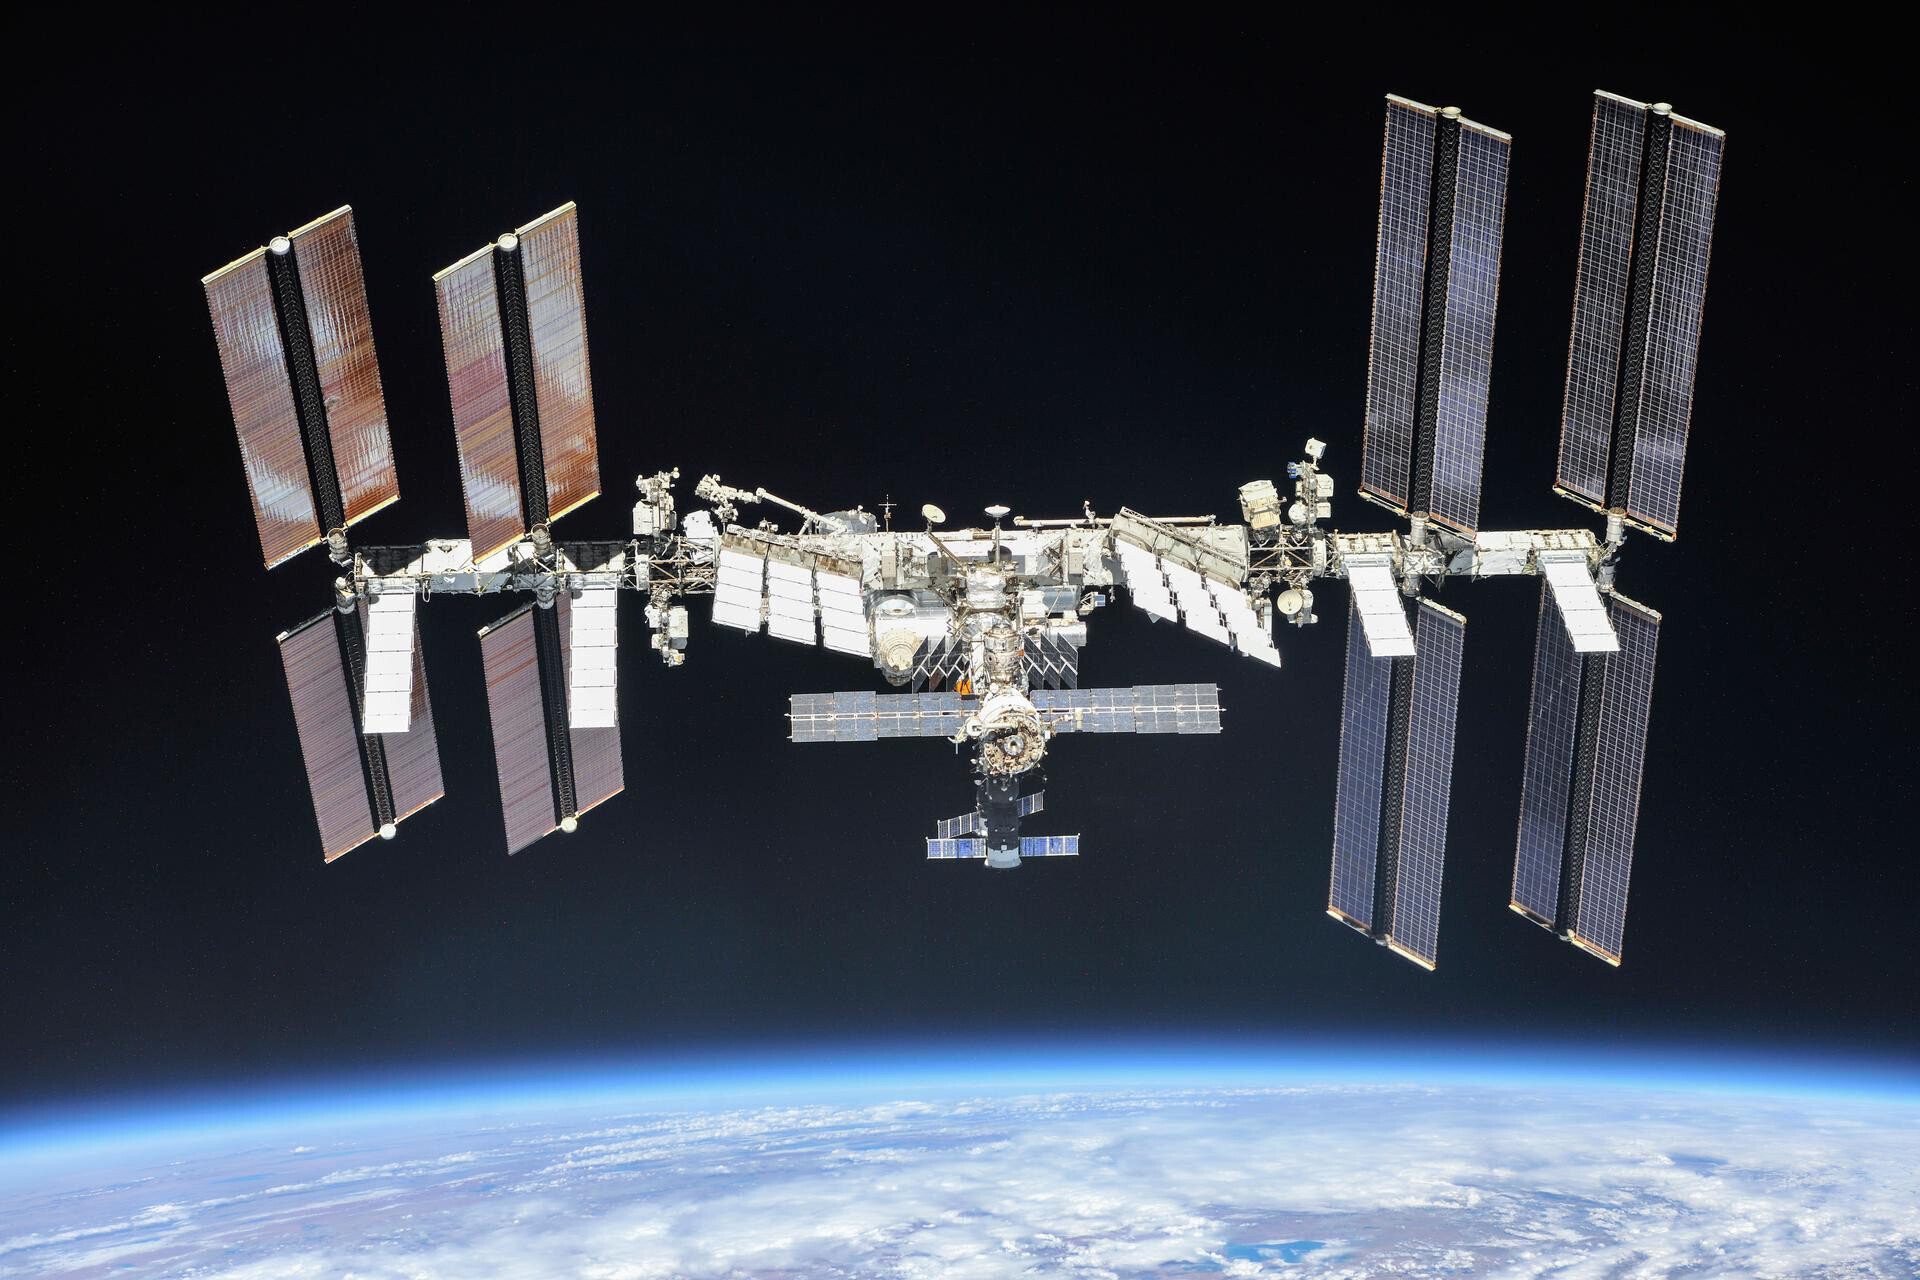 Trạm vũ trụ quốc tế (ISS) mở ra kỷ nguyên hợp tác khám phá không gian quy mô toàn cầu chưa từng có. Nó bắt đầu hoạt động vào tháng 11/2000. Kể từ đó, trạm là nơi làm việc của nhiều phi hành gia và nhà du hành vũ trụ quốc tế. (Ảnh: Google)